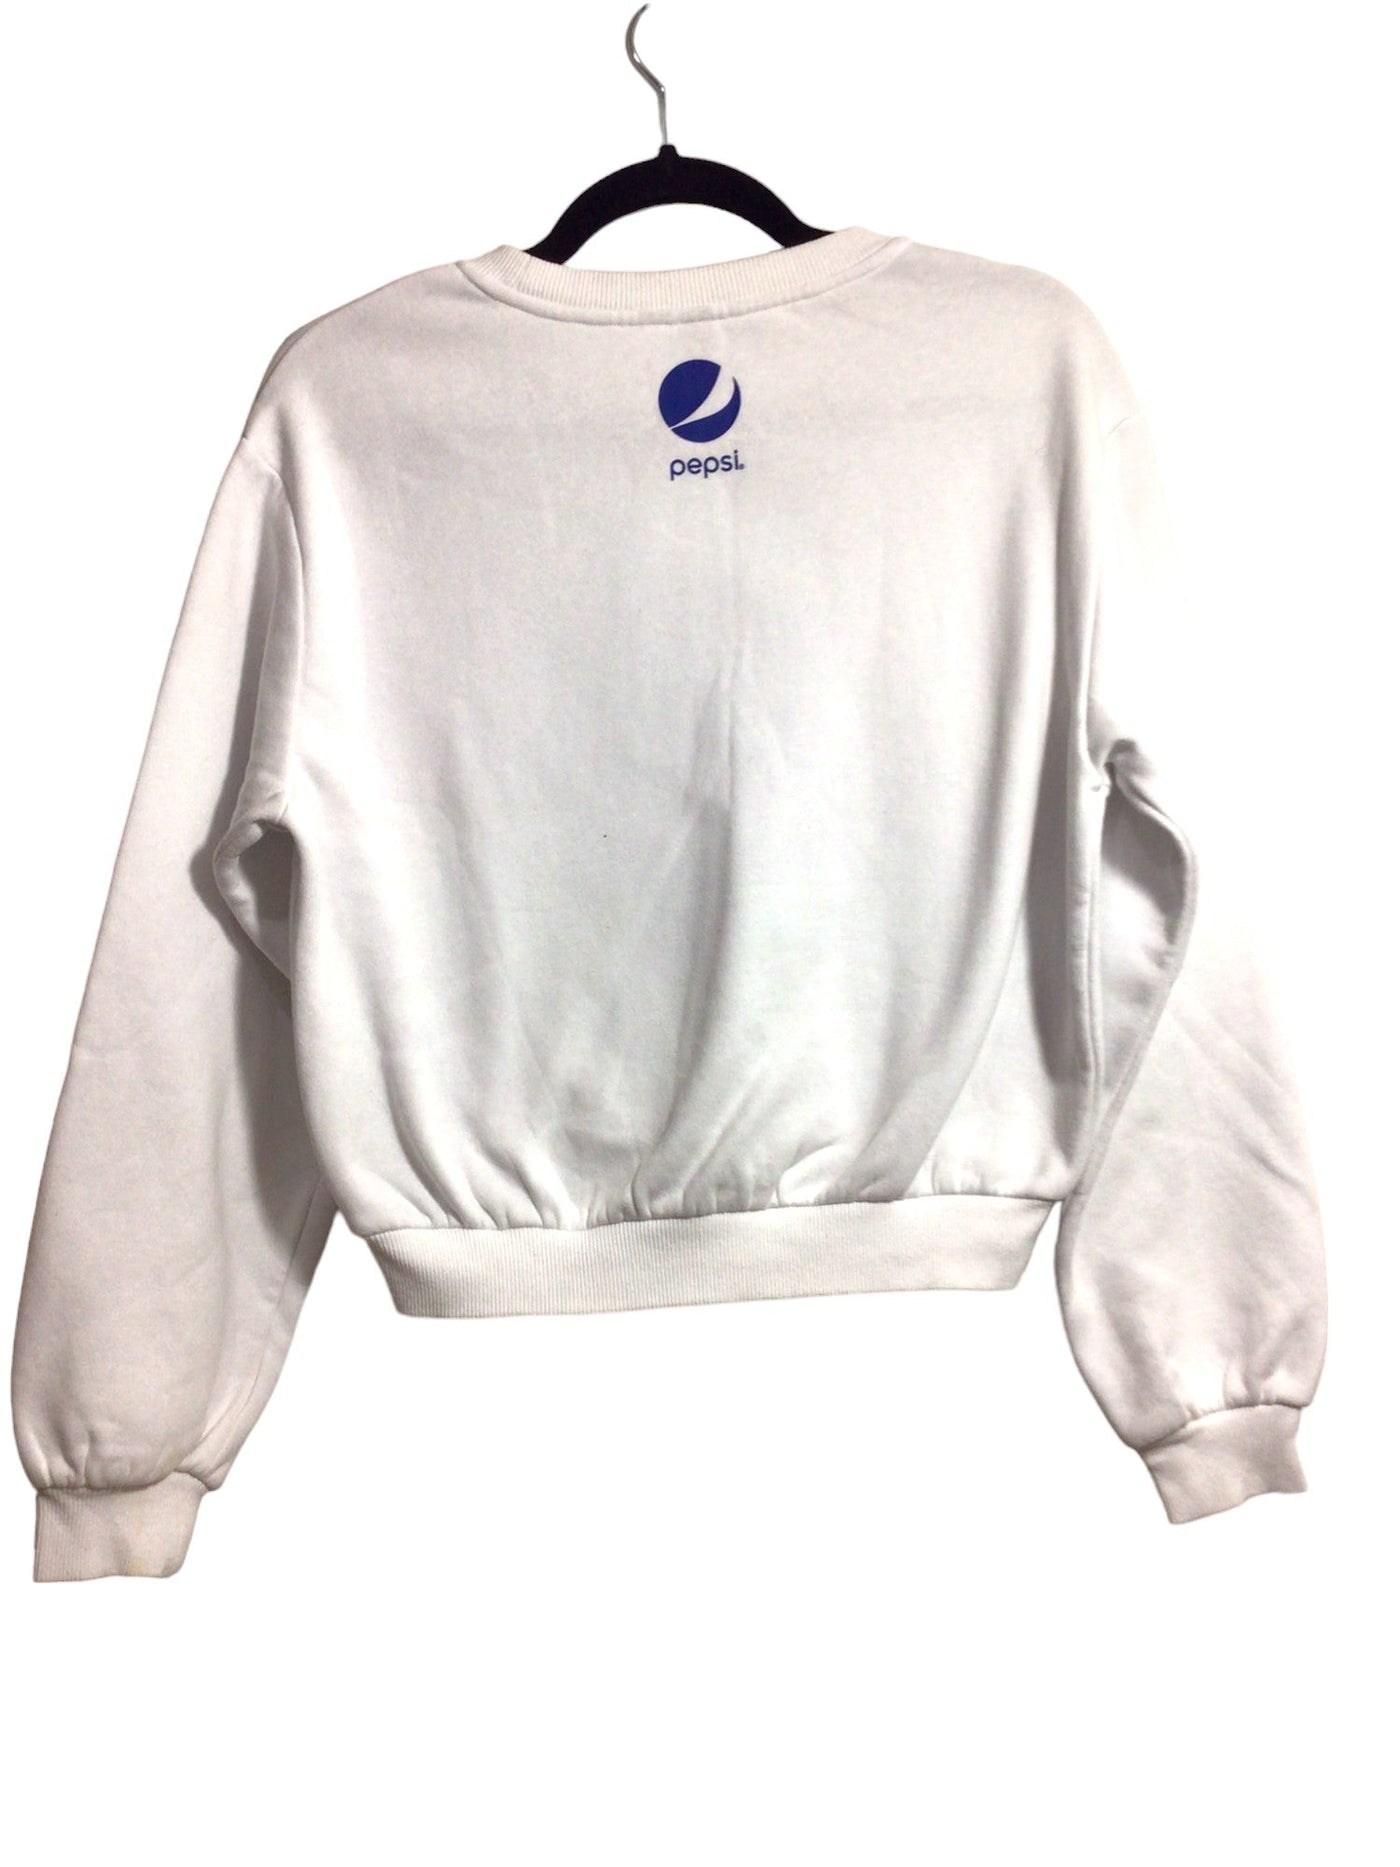 H&M Women Sweaters Regular fit in White - Size S | 9.99 $ KOOP